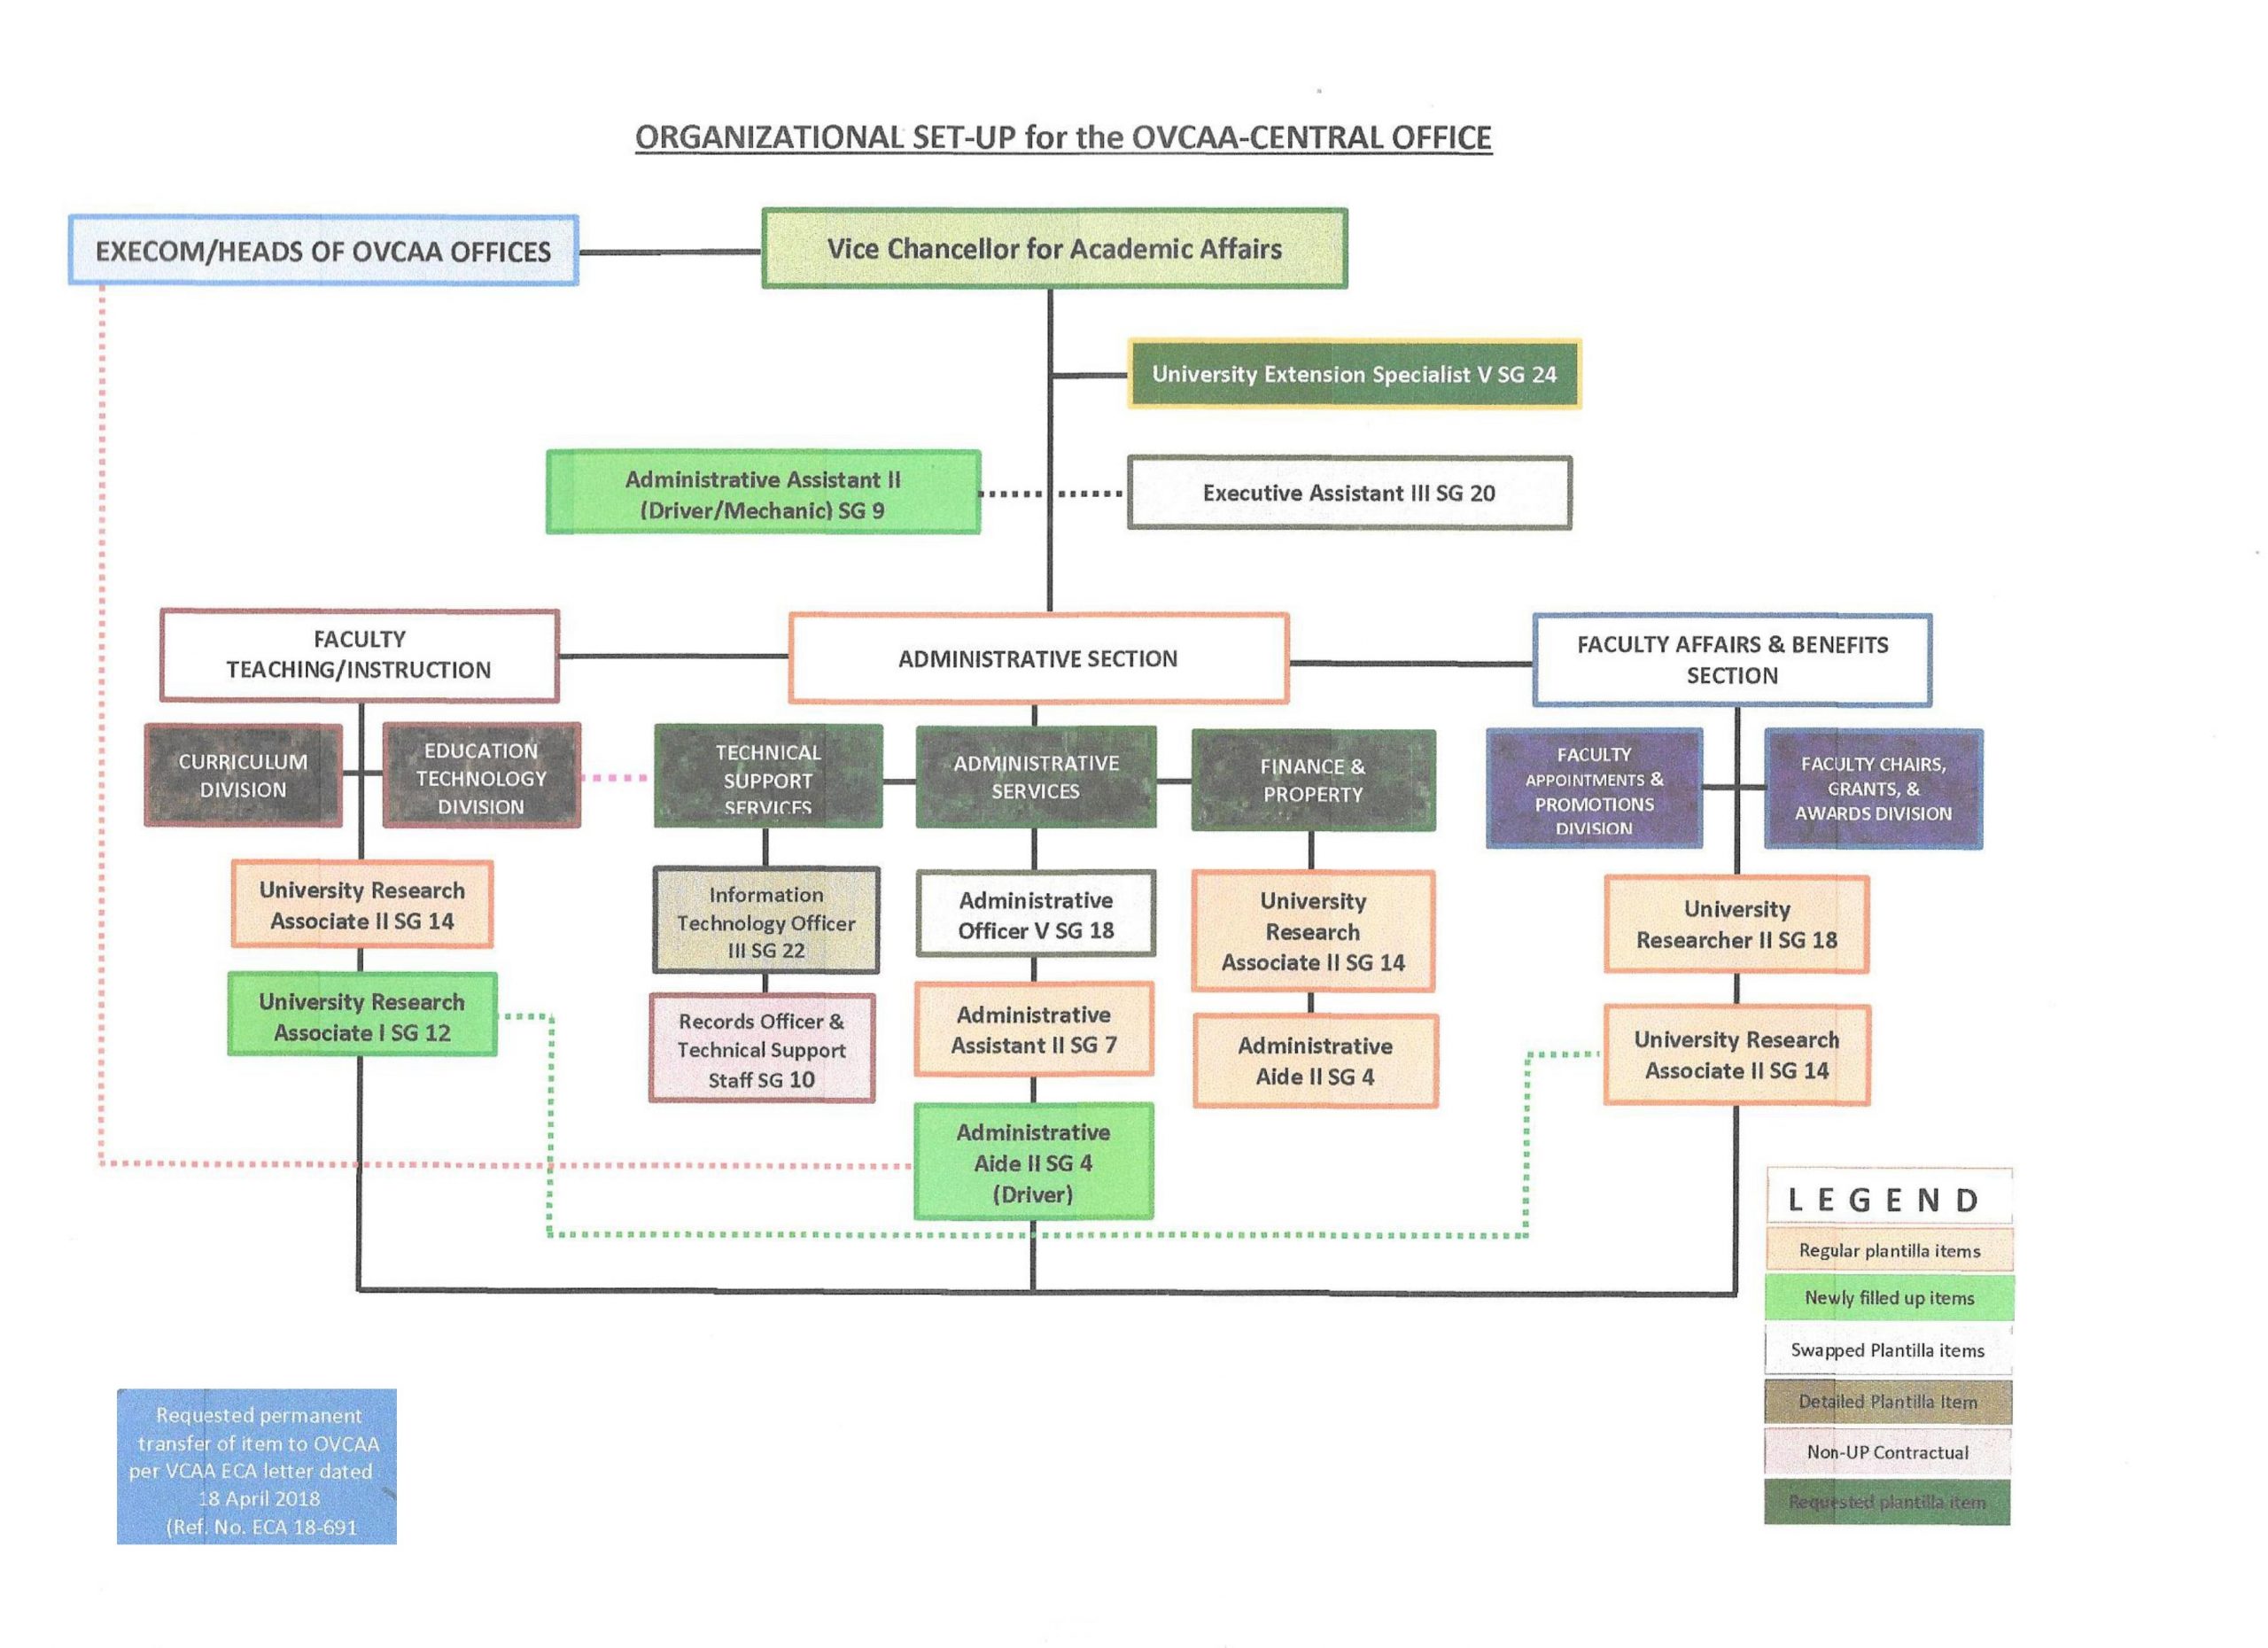 organizational chart